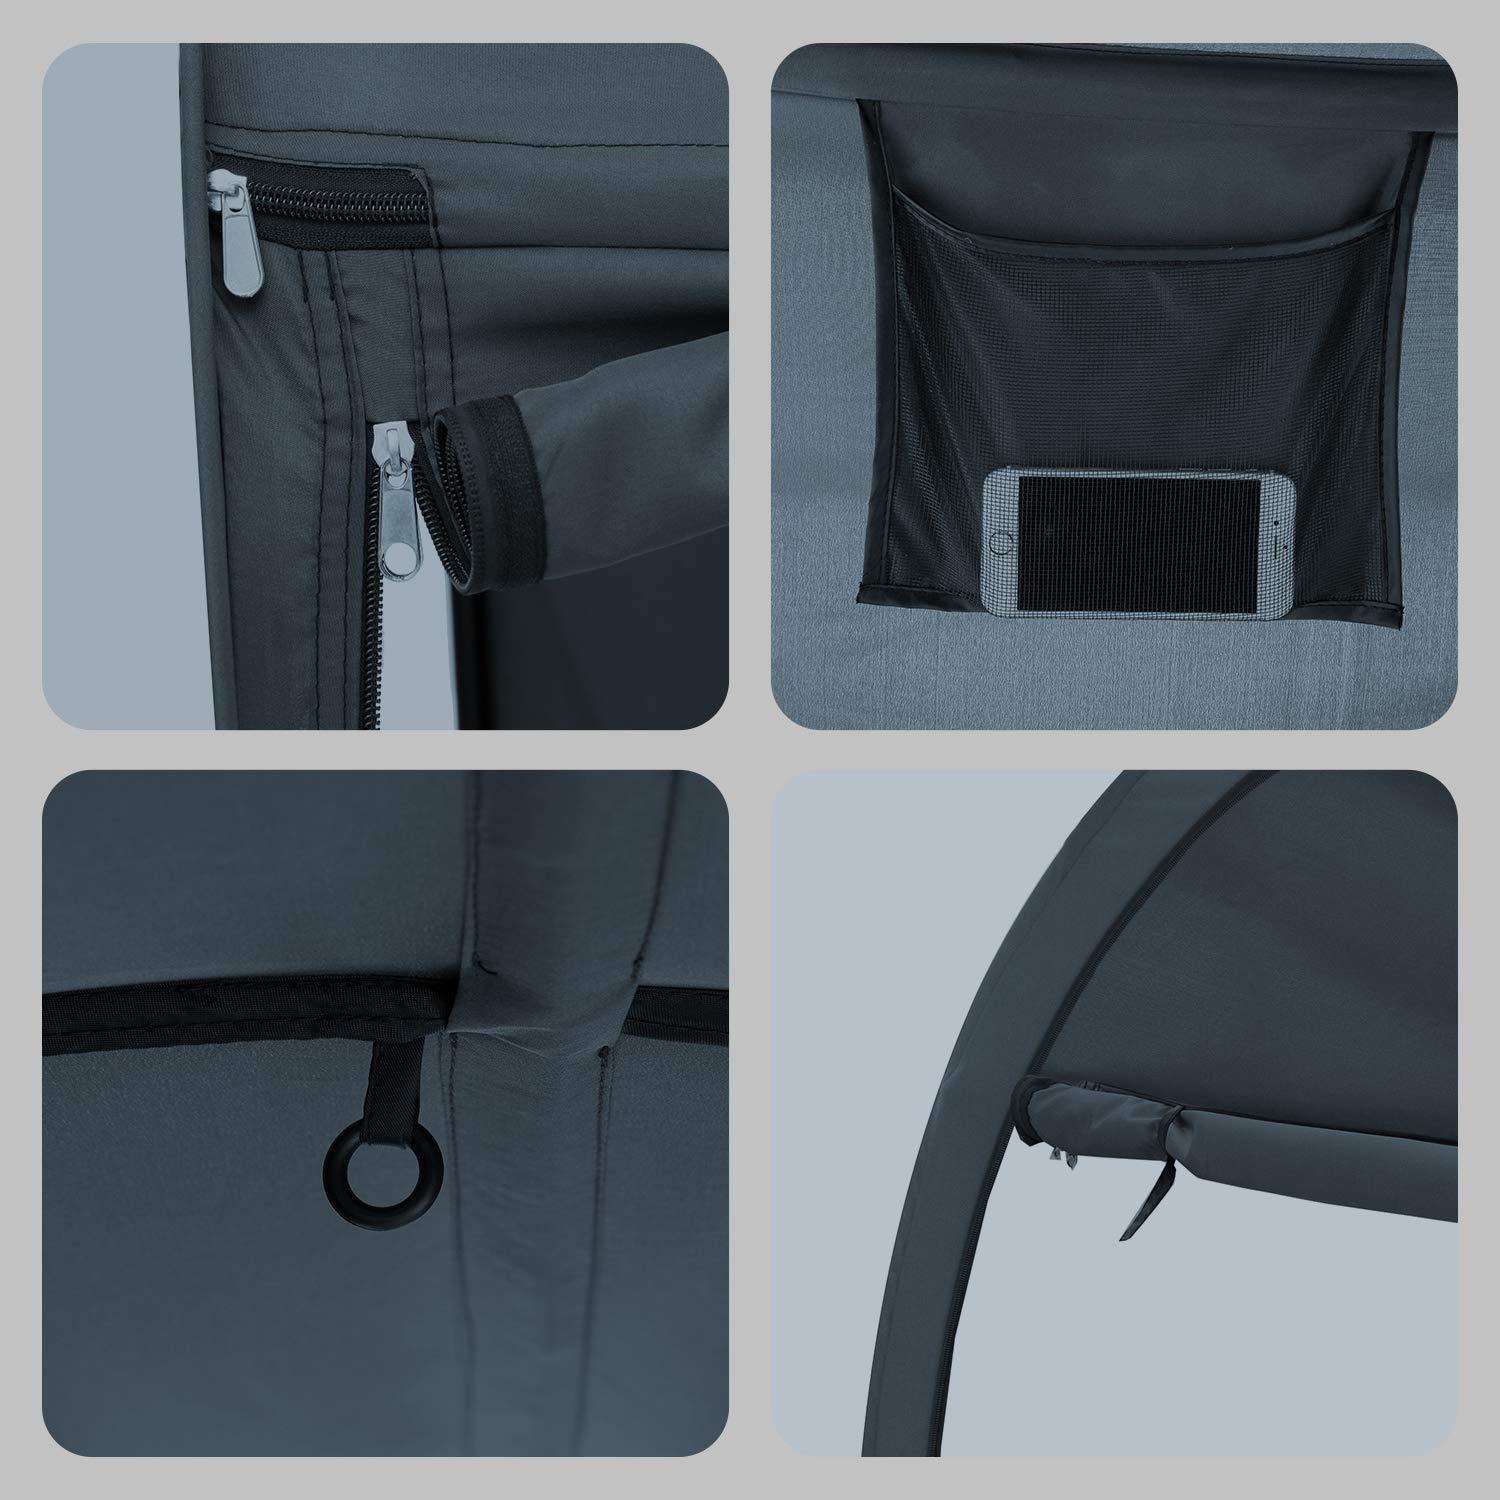 Alvantor/Leedor Privacy Pop Tent Bed Canopy Features